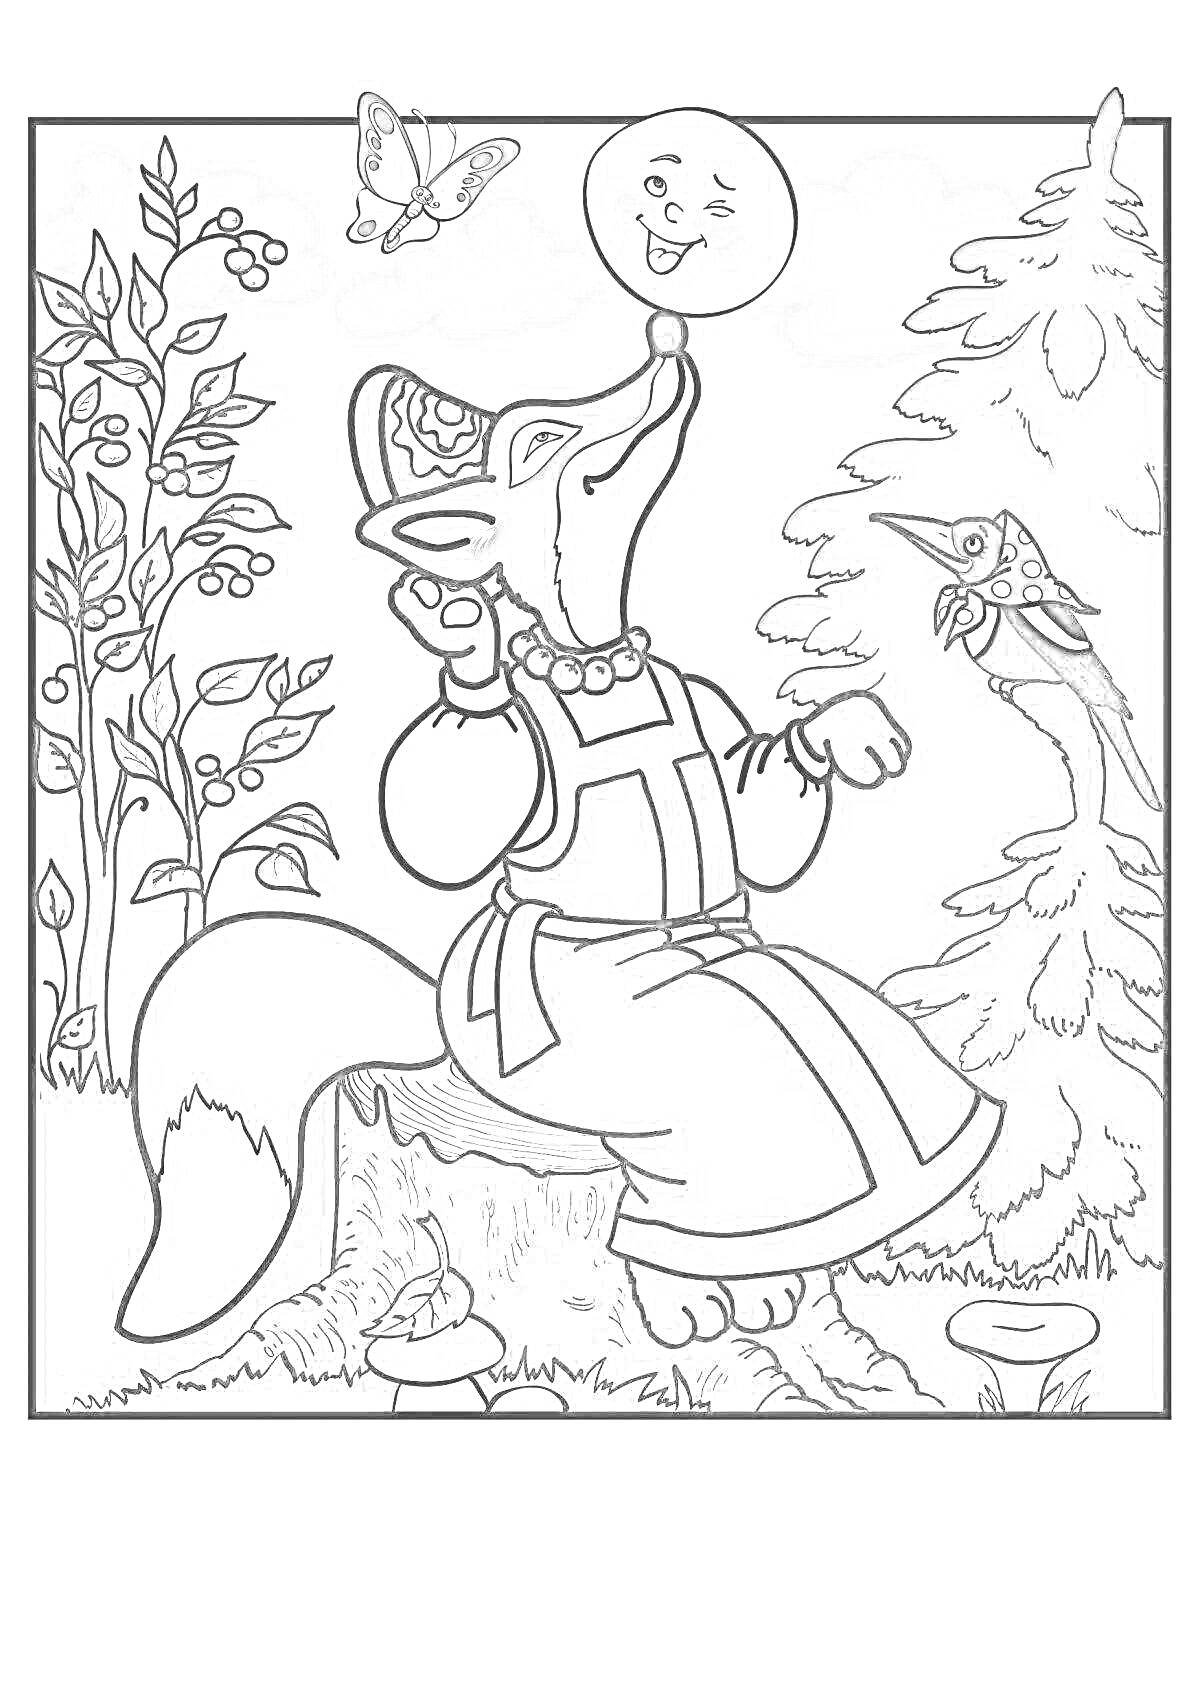 Раскраска Лиса с колобком на носу, сидящая на пеньке, с мухоморами вокруг, деревьями и кустарником, бабочкой и птицей